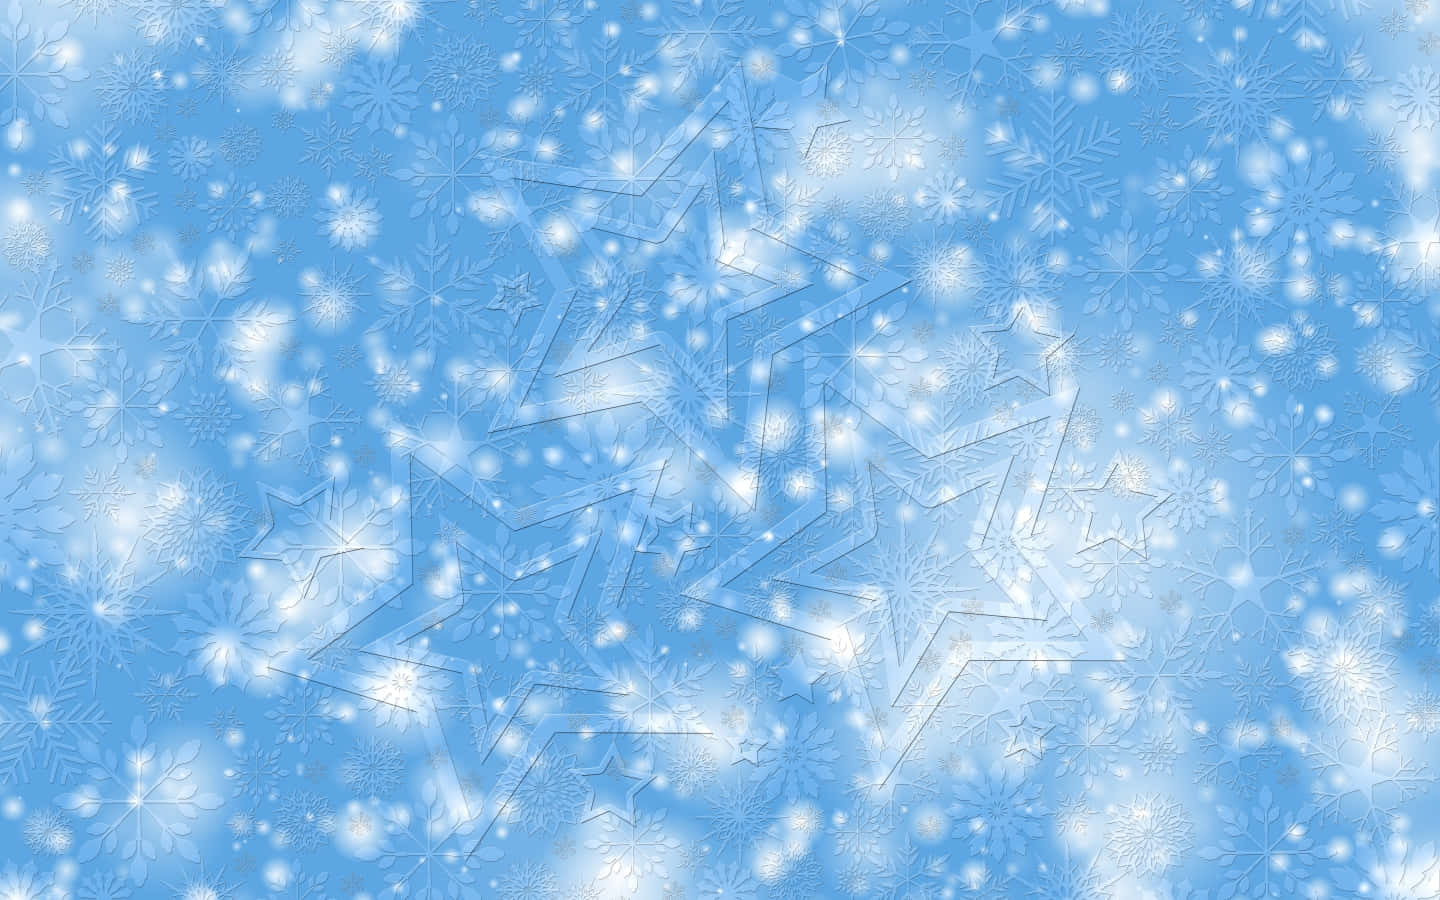 Envacker Snöflinga I Form Av En Fraktal På En Blå Vinterbakgrund